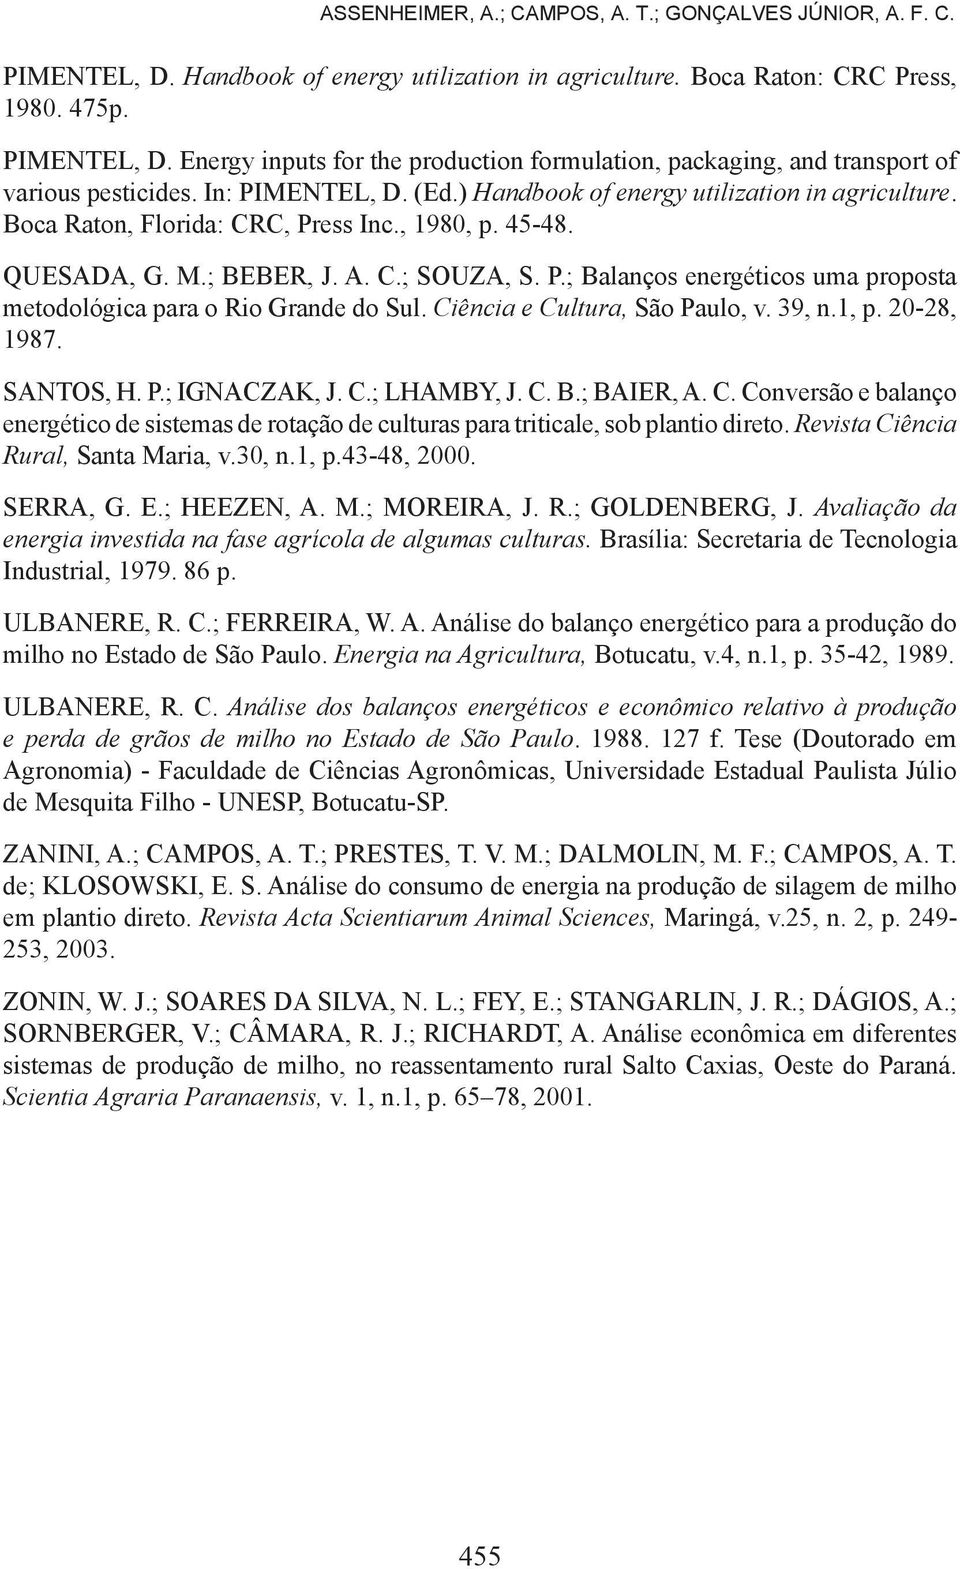 Ciência e Cultura, São Paulo, v. 39, n.1, p. 20-28, 1987. SANTOS, H. P.; IGNACZAK, J. C.; LHAMBY, J. C. B.; BAIER, A. C. Conversão e balanço energético de sistemas de rotação de culturas para triticale, sob plantio direto.